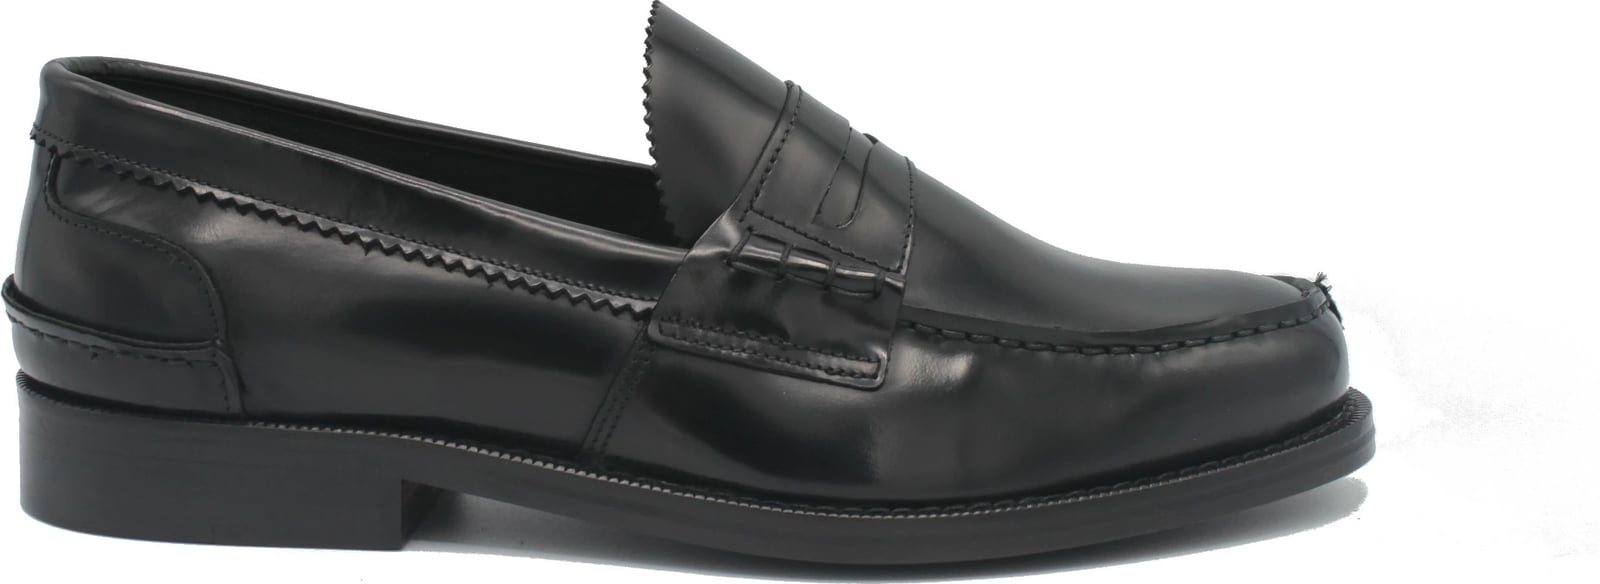 Këpucë Loafer për Meshkuj Saxone of Scotland, të zeza